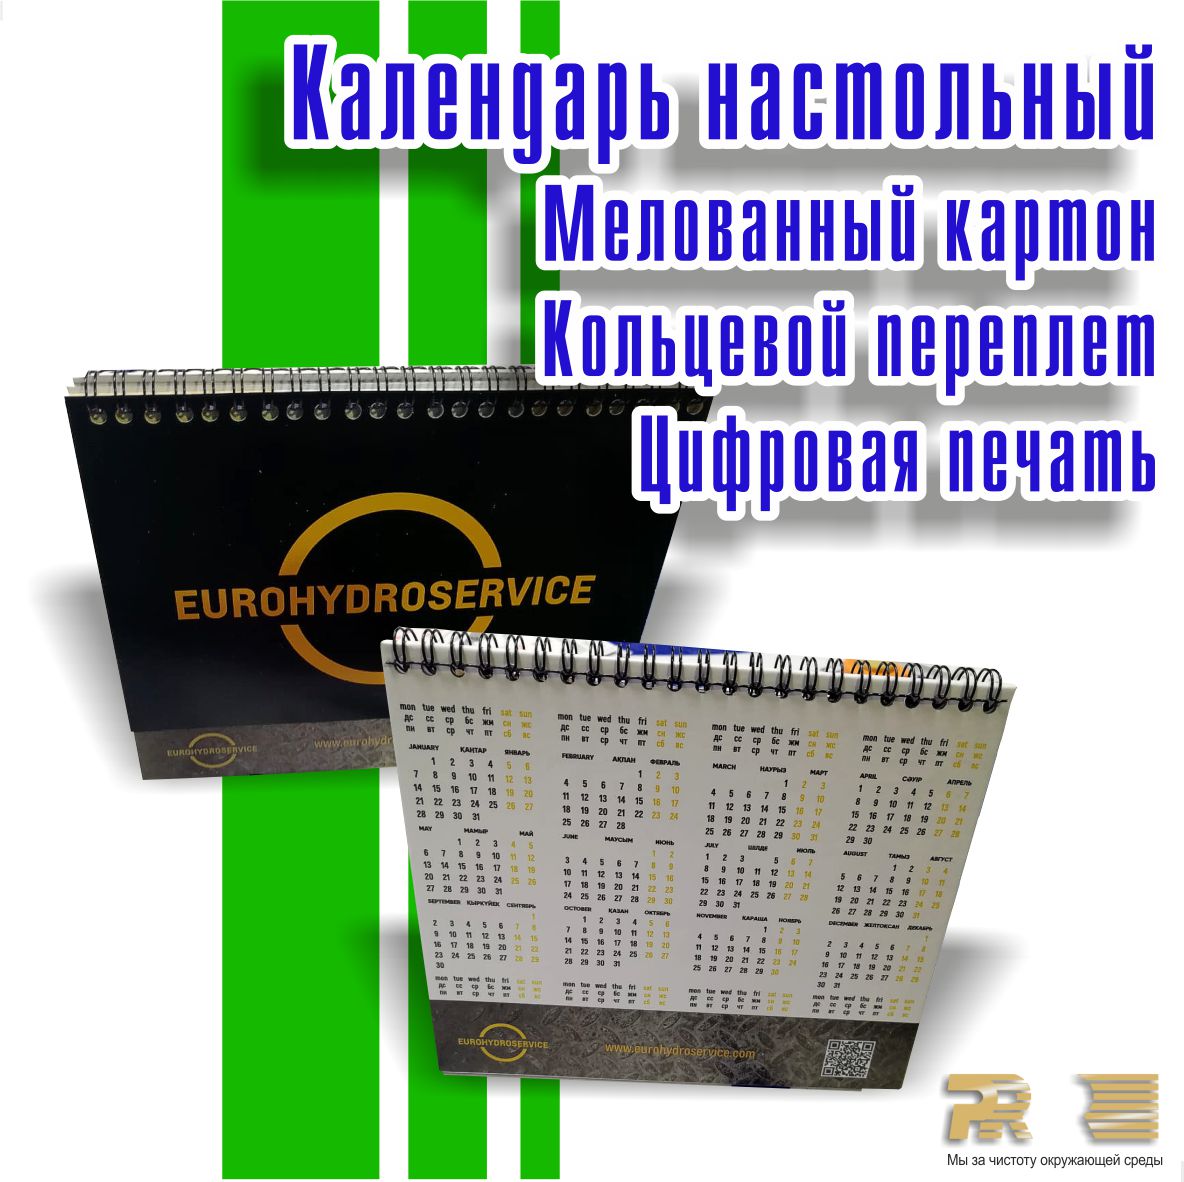 Календарь Еврогидросервис